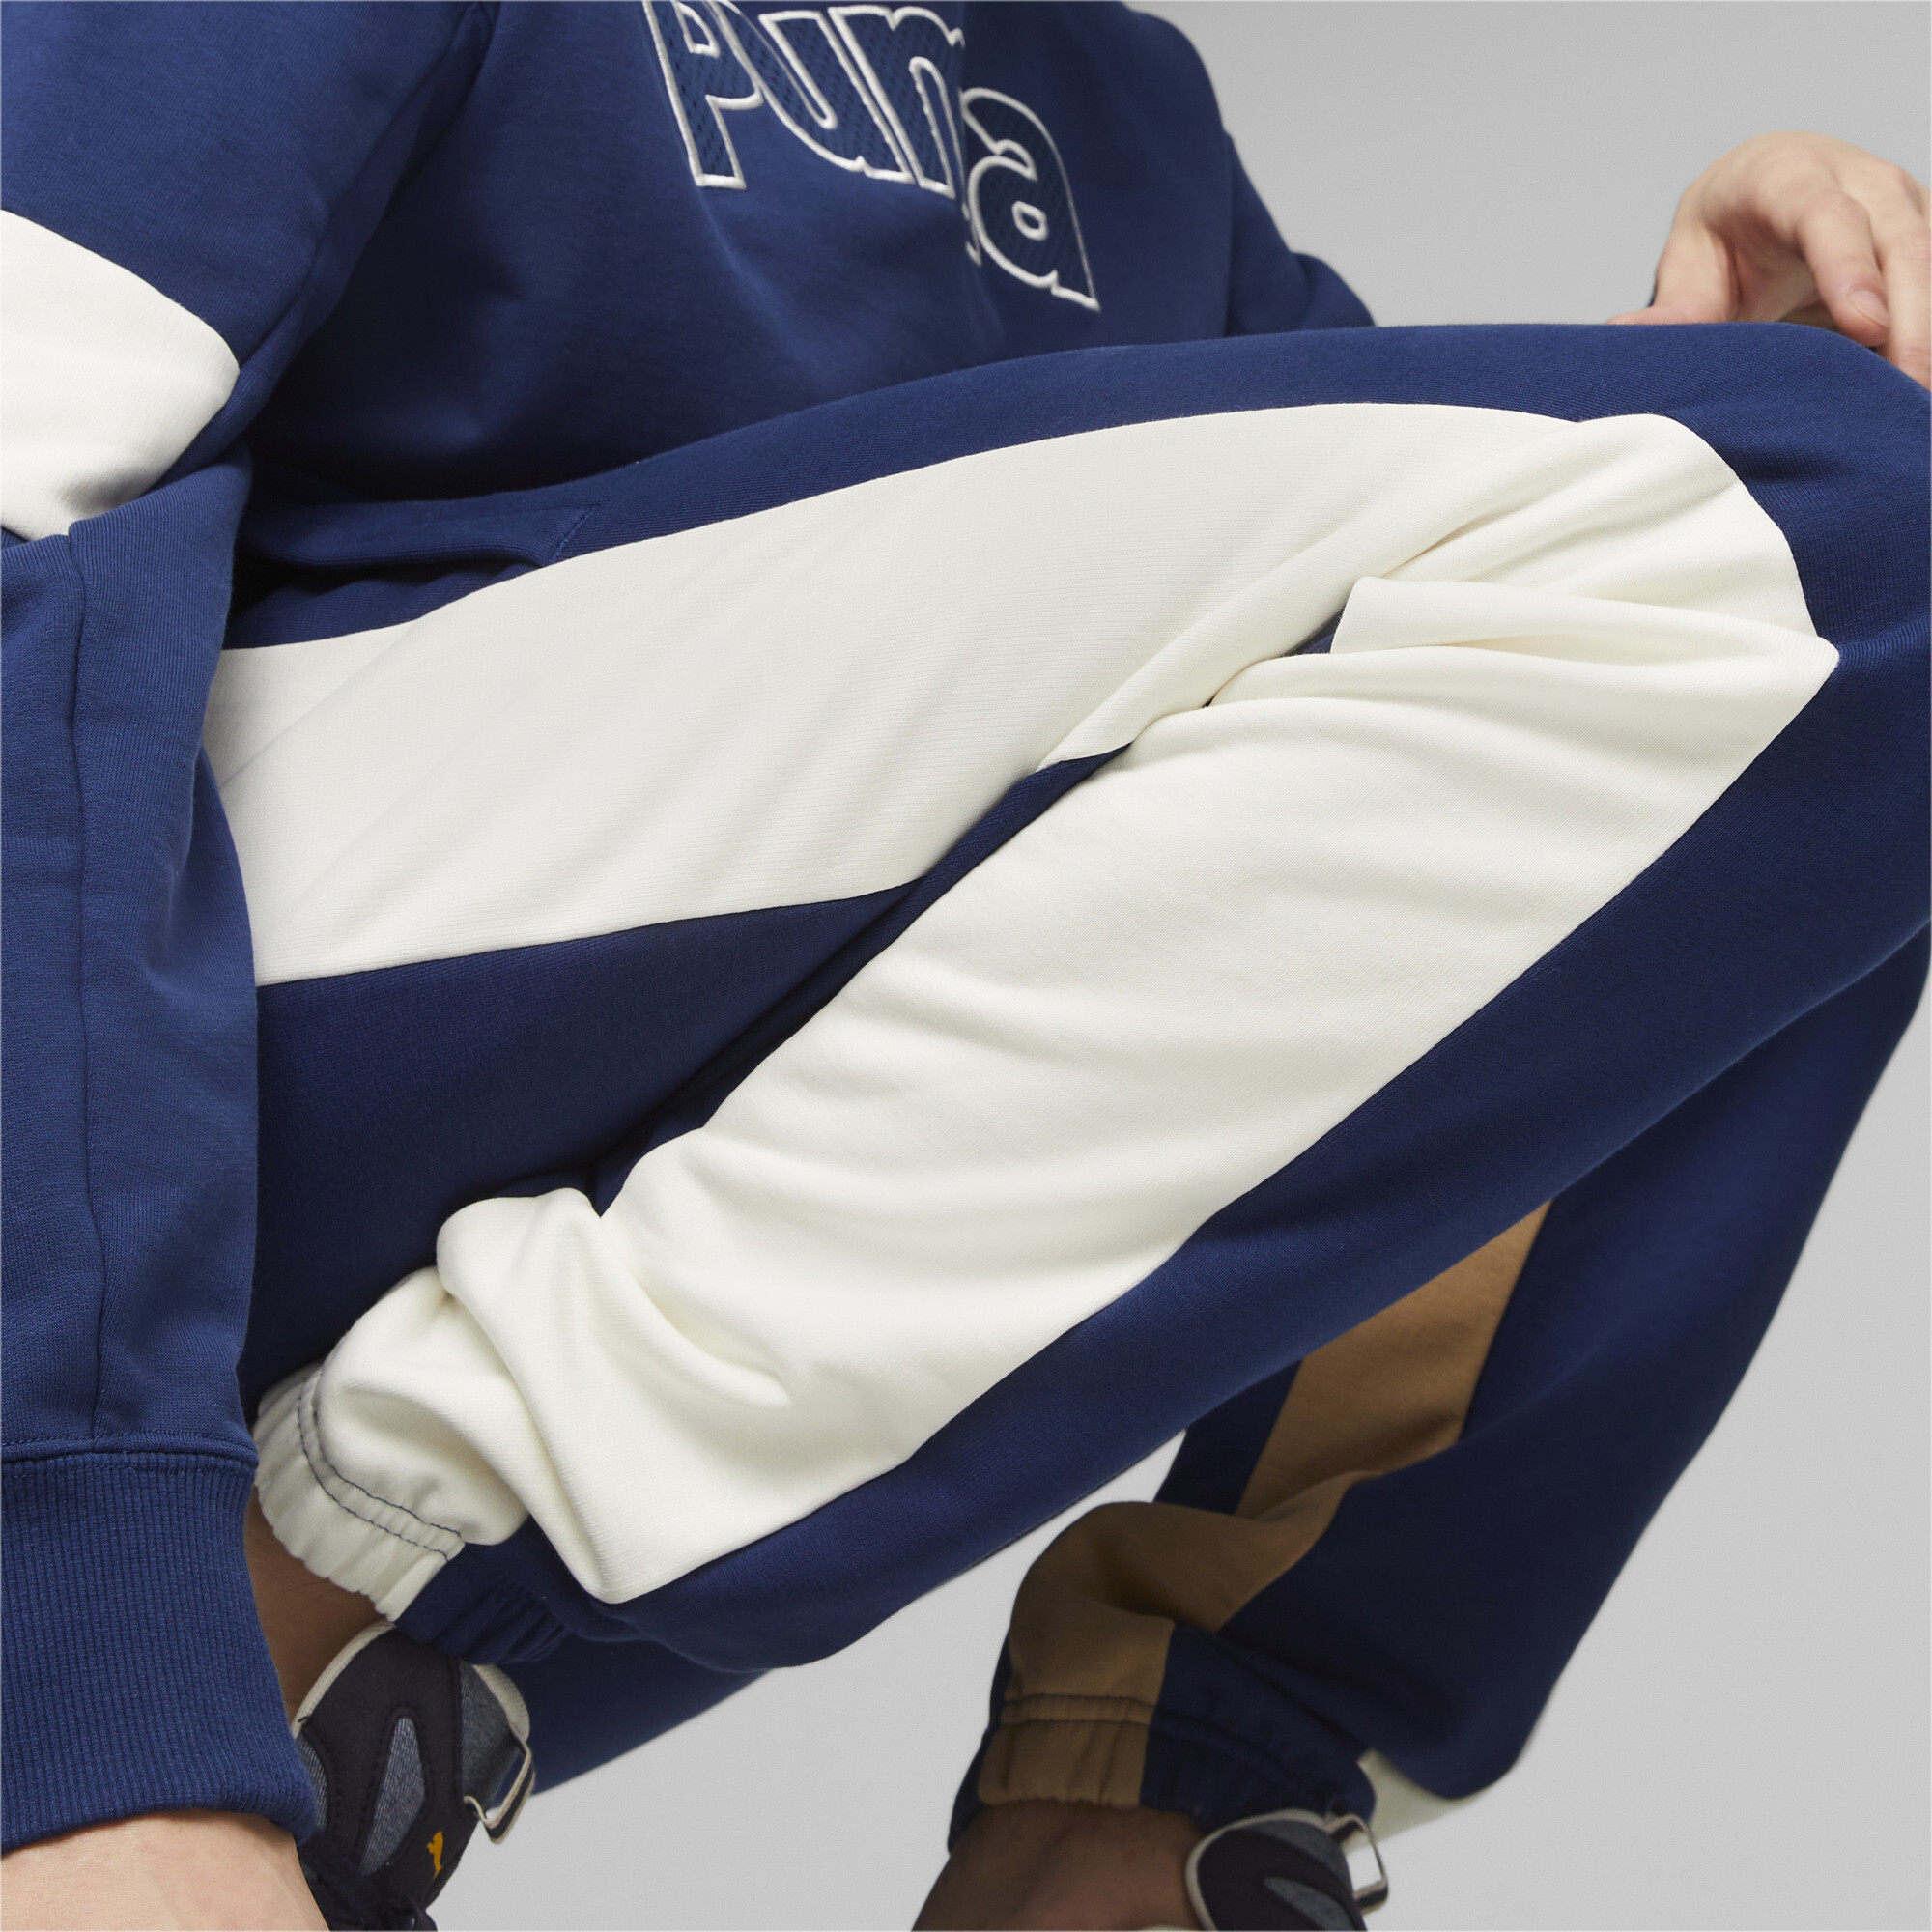 Men's Puma Classics Block's Sweatpants, Blue, Size XXL, Clothing